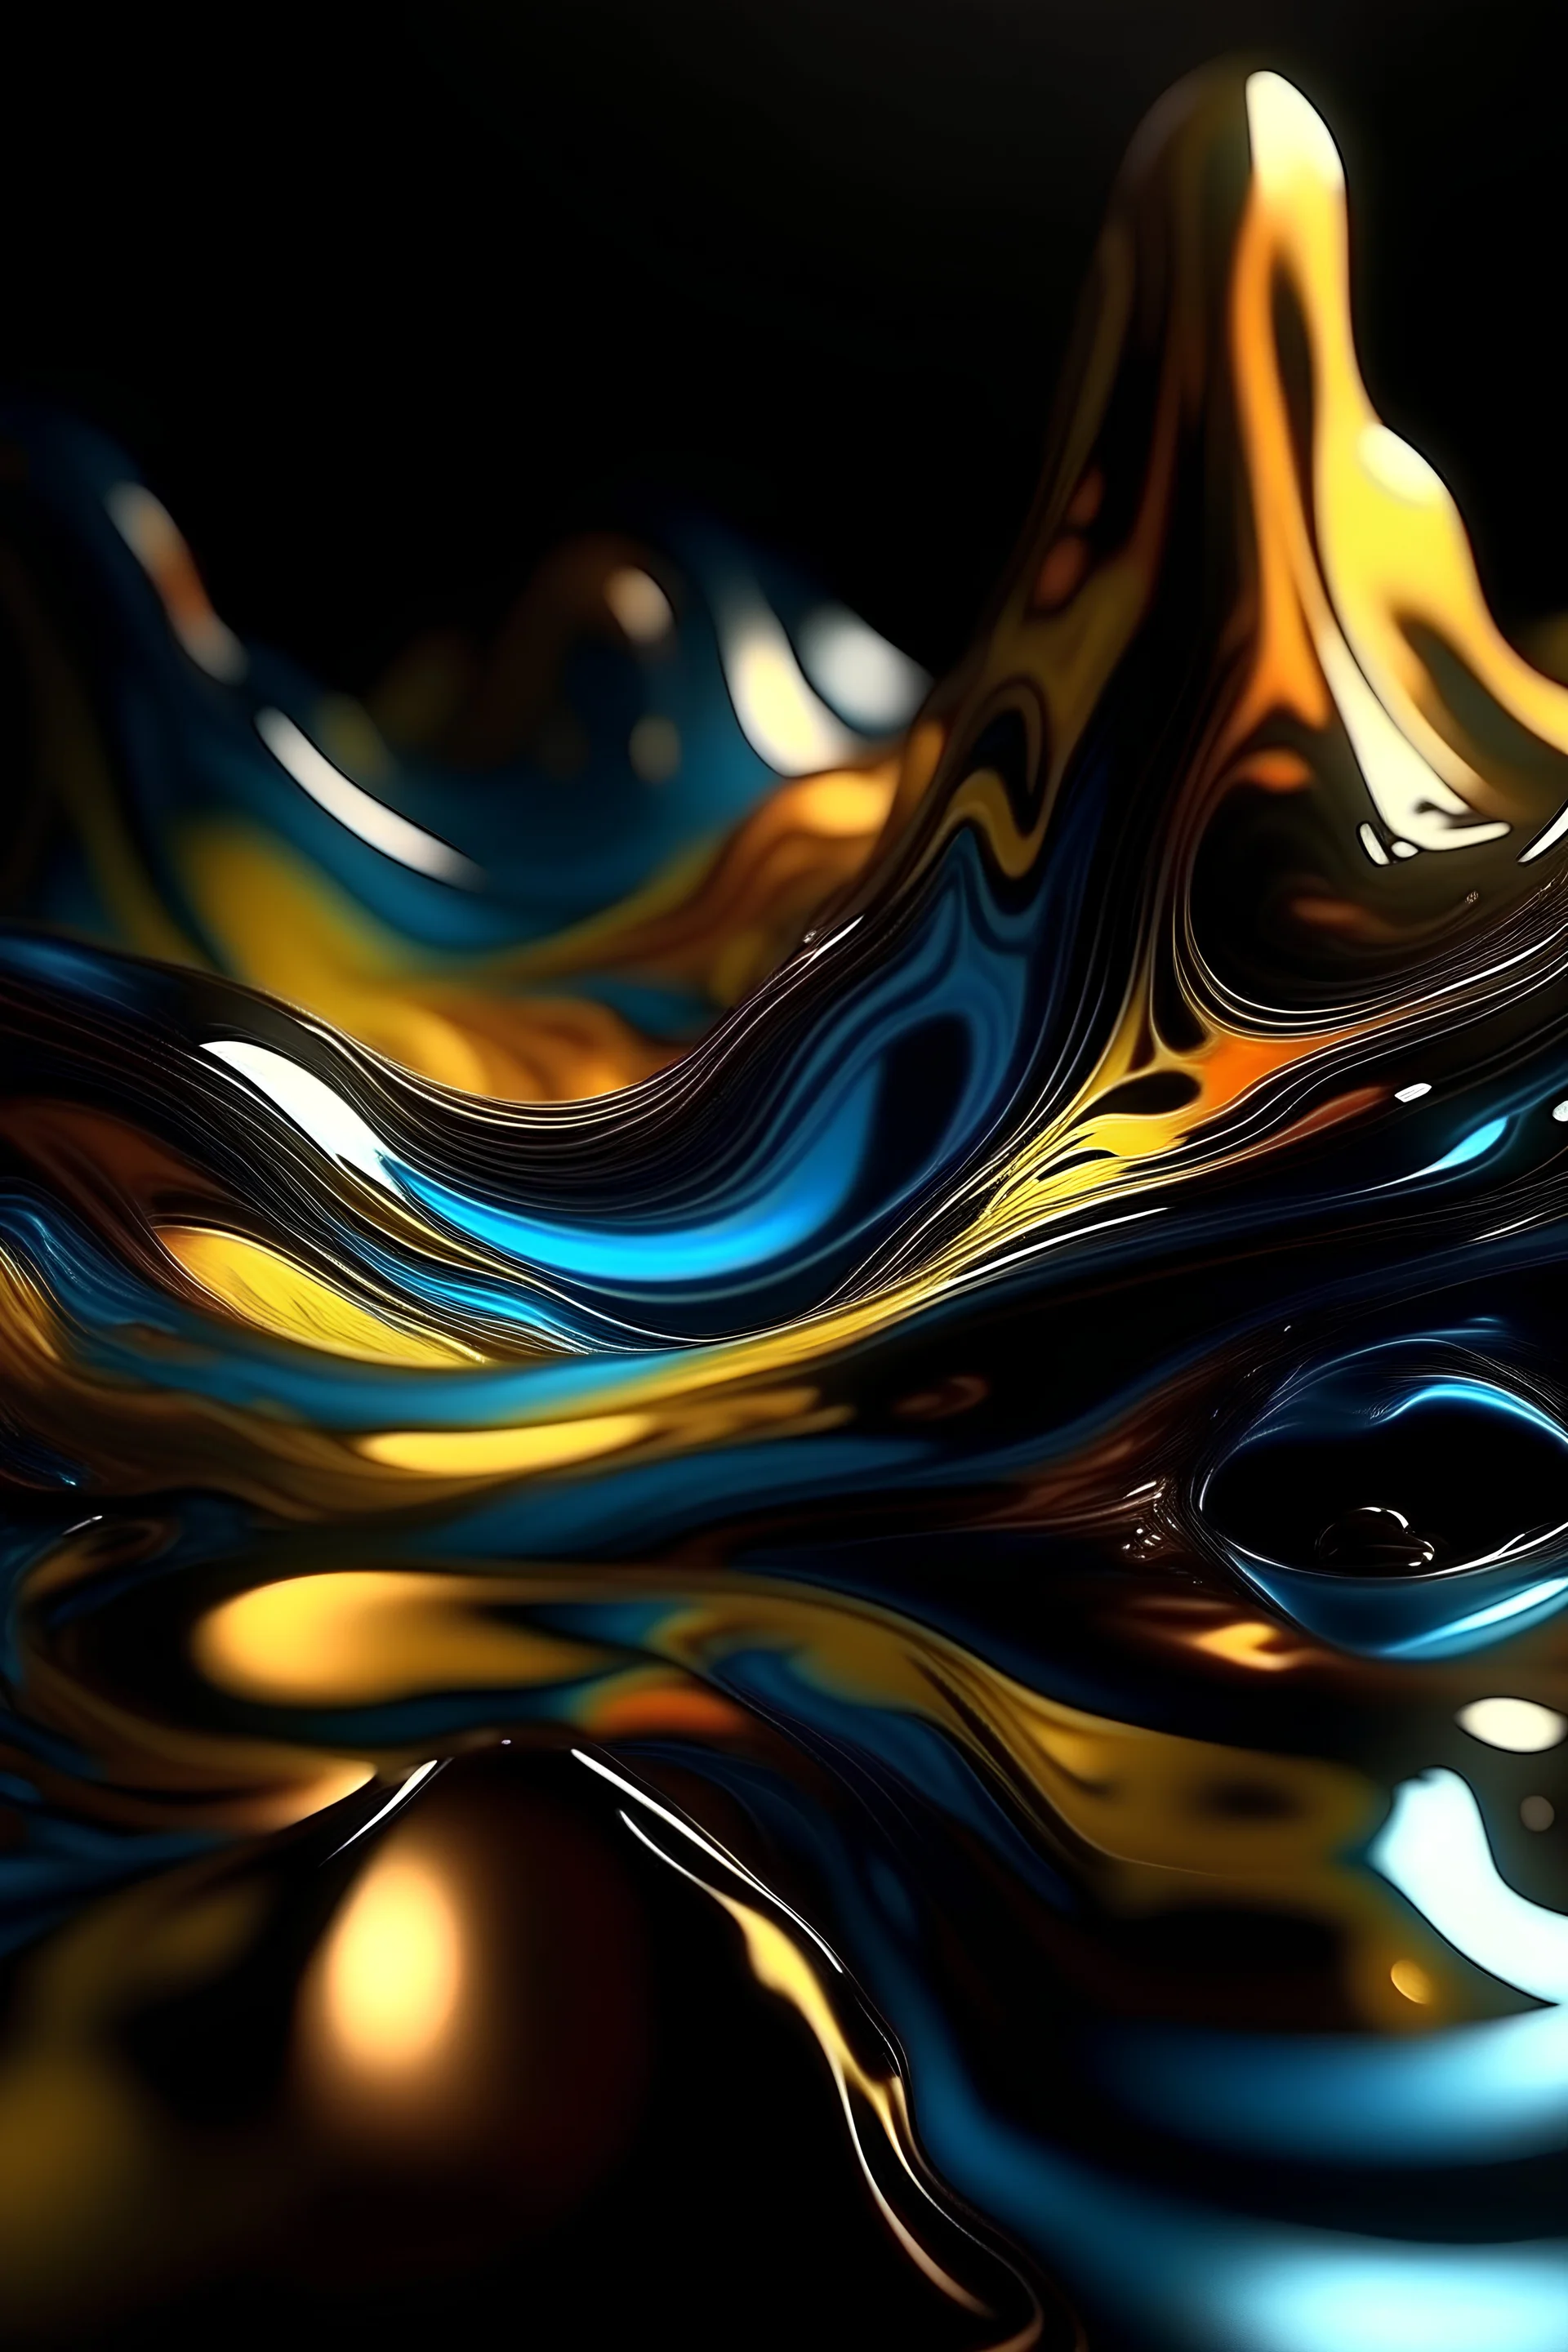 Abstract Fluid, Liquid light